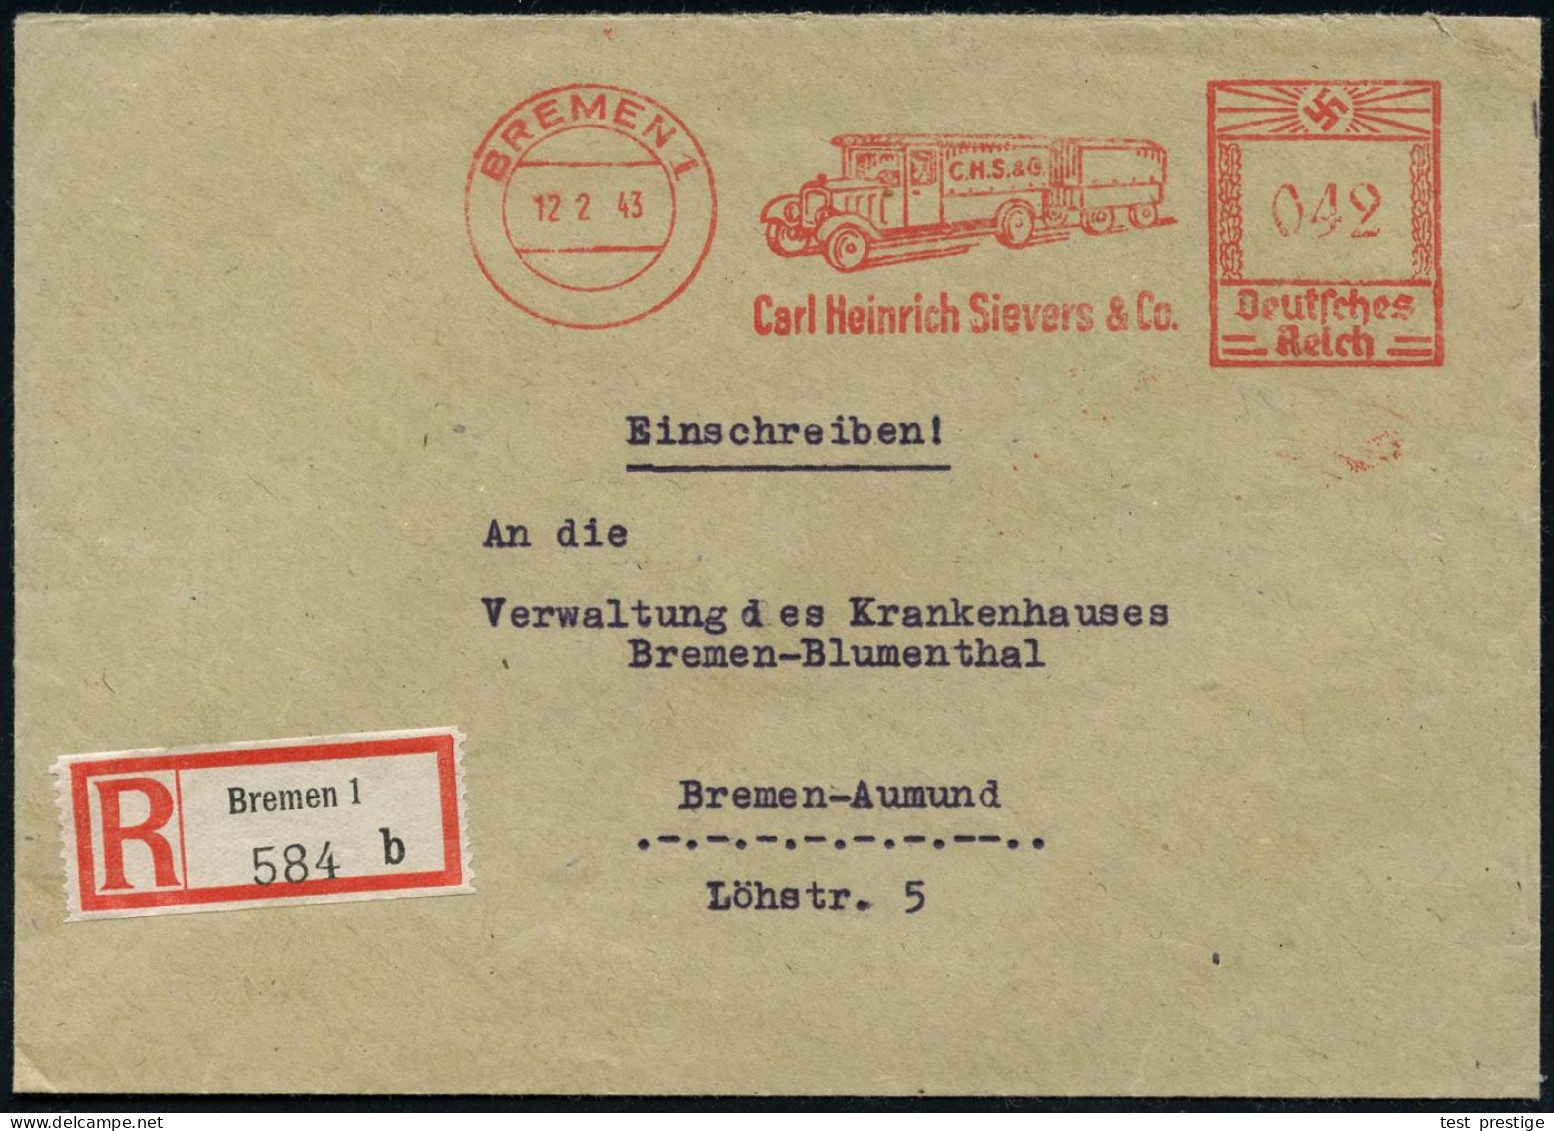 BREMEN 1/ Carl Heinrich Sievers & Co. 1943 (12.2.) AFS Francotyp  042 Pf. = LKW-Zug Mit Anhänger + RZ: Bremen 1/b, Klar  - LKW